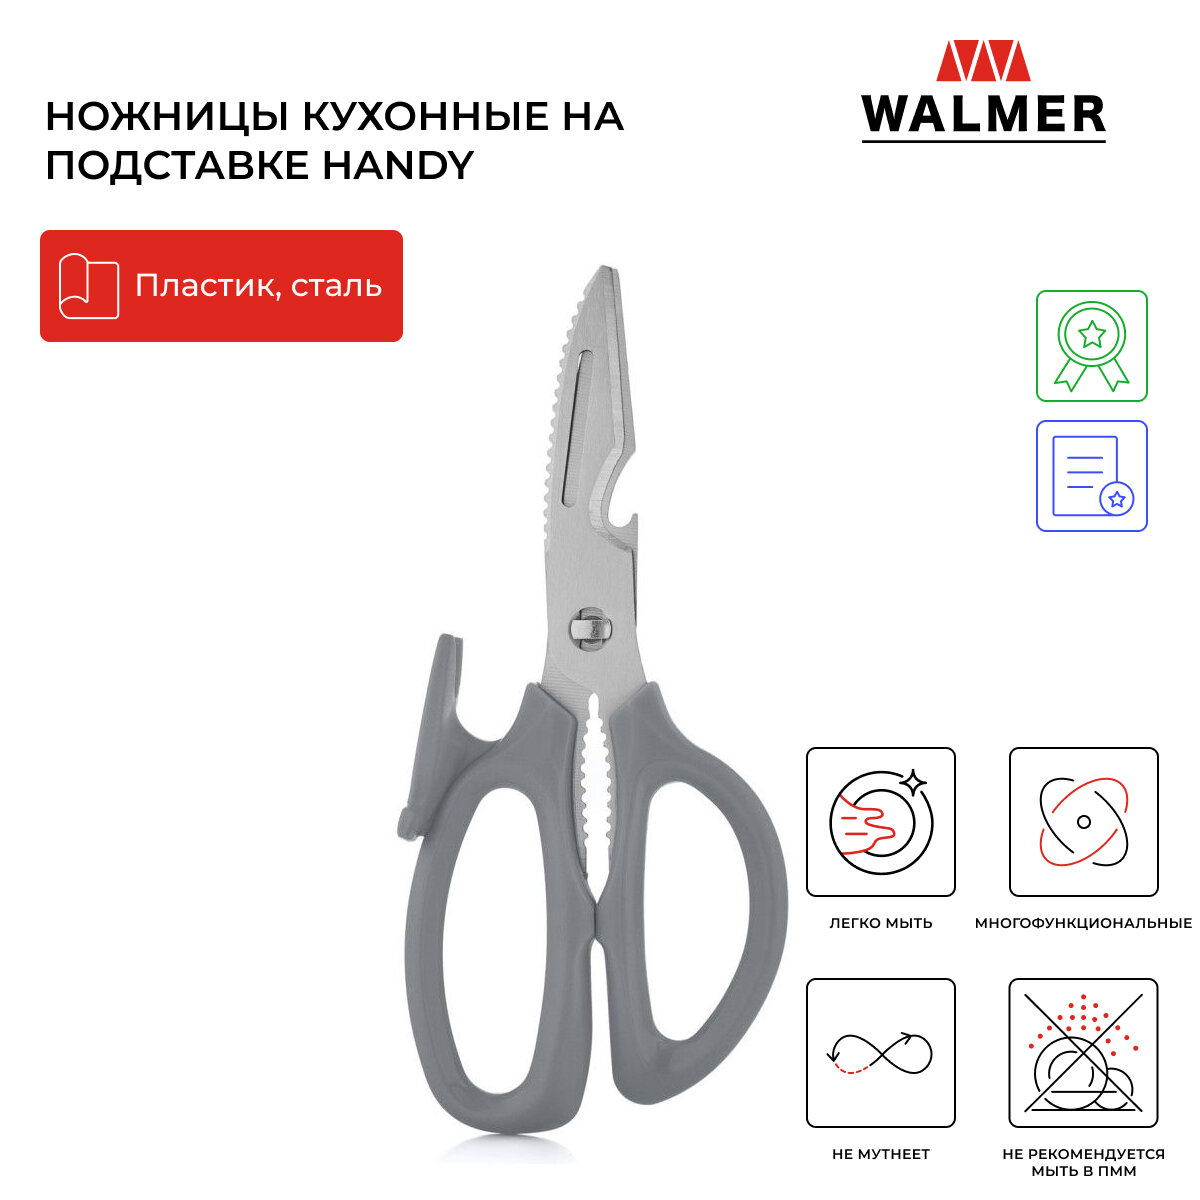 Ножницы кухонные на подставке Walmer Handy, 20.5 см, цвет серый